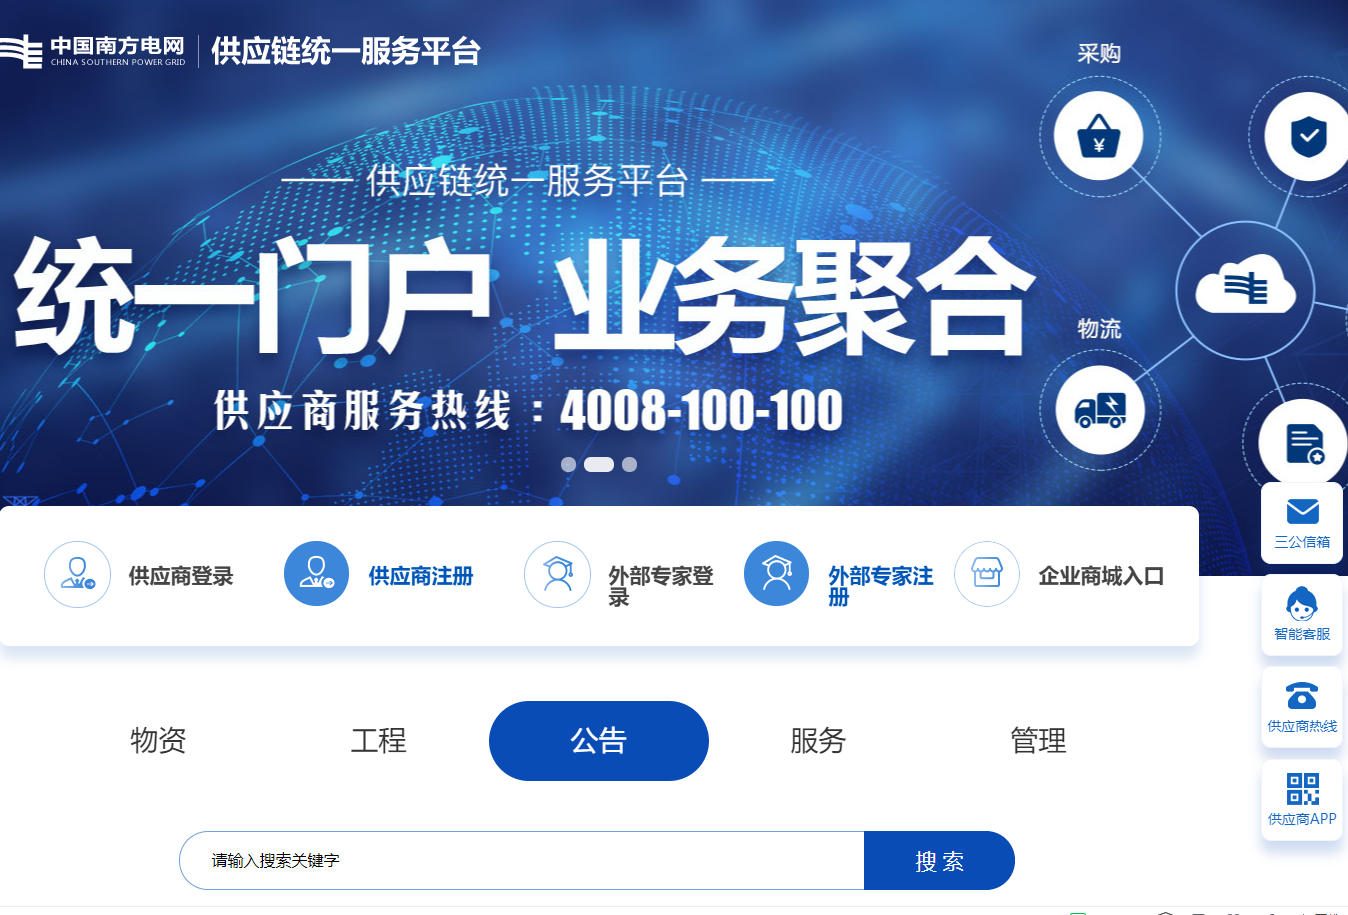 中国南方电网-供应链统一服务平台